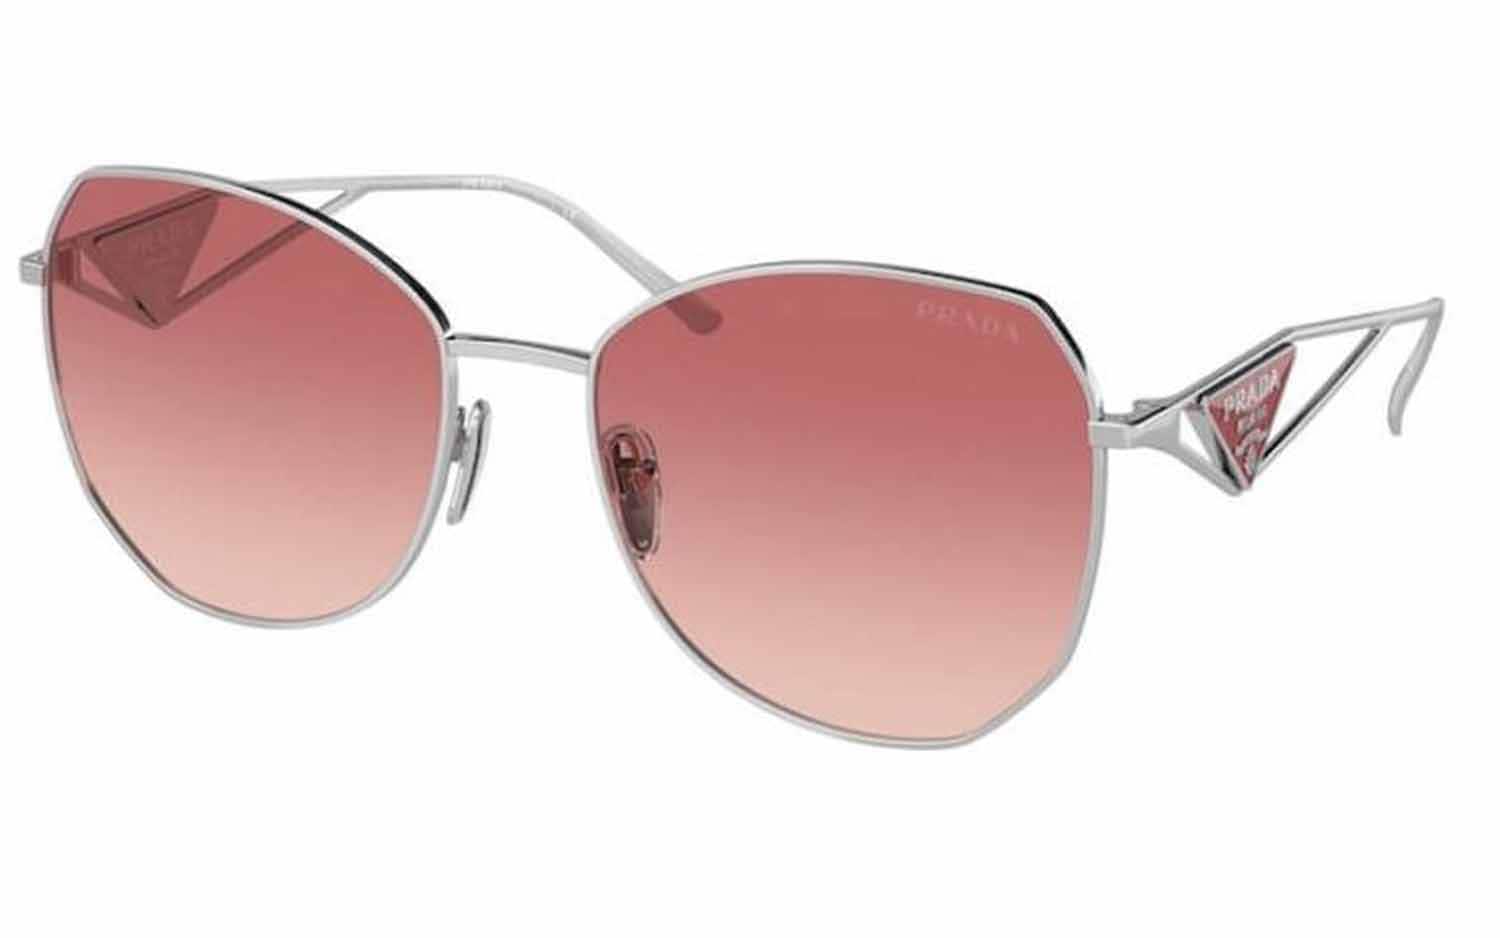 Prada 0PR 57YS Sunglasses for Women